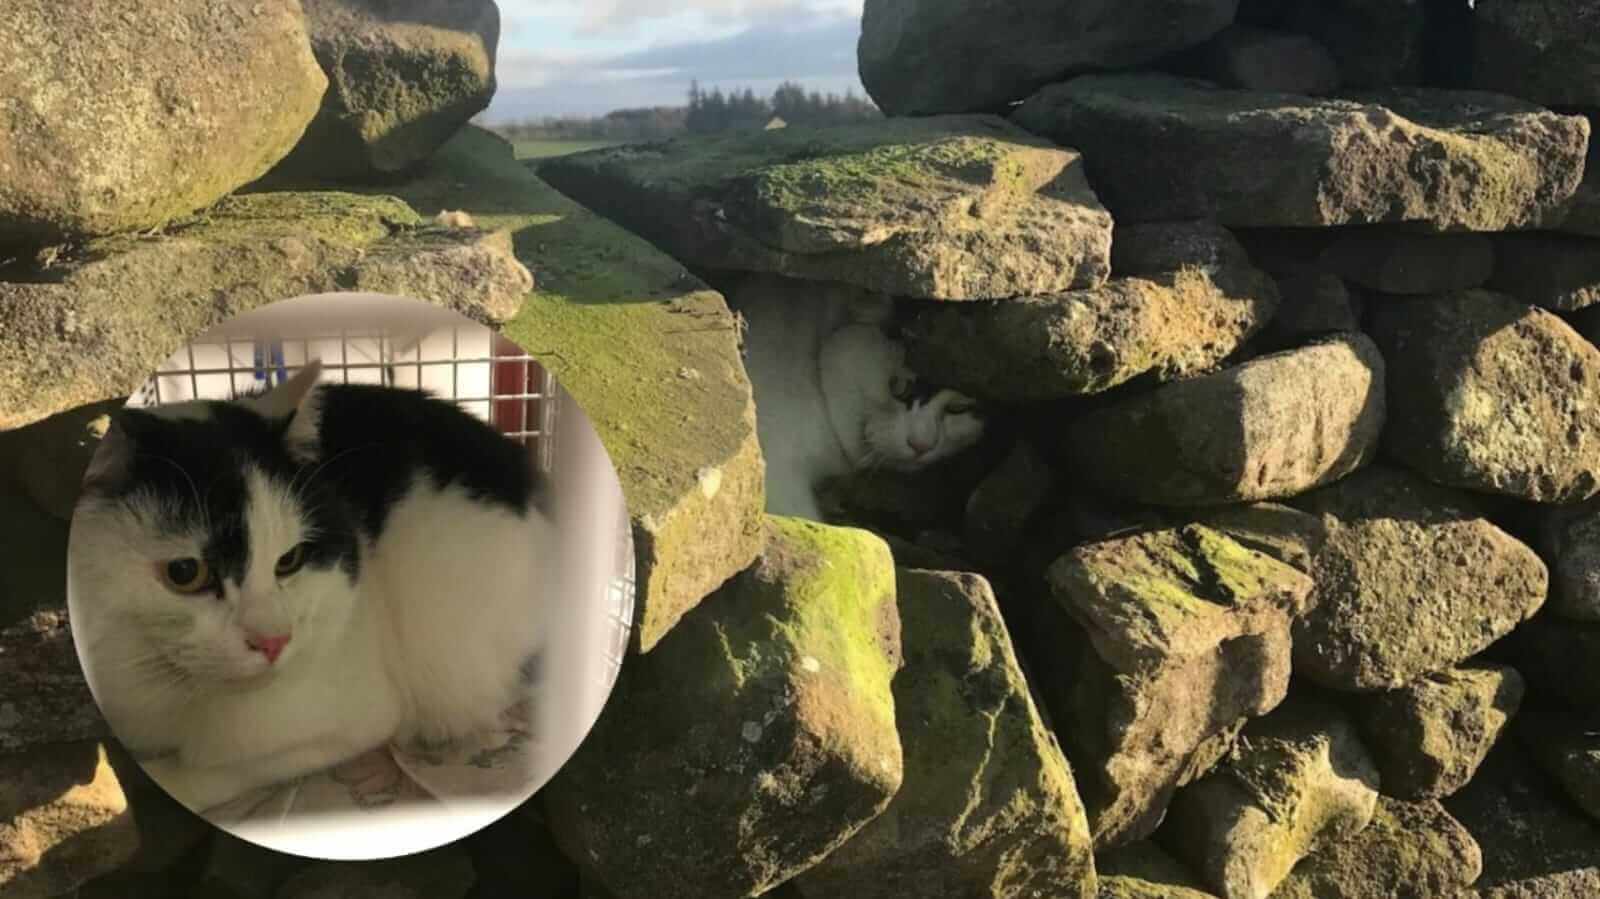 Gato preso em parede de pedras